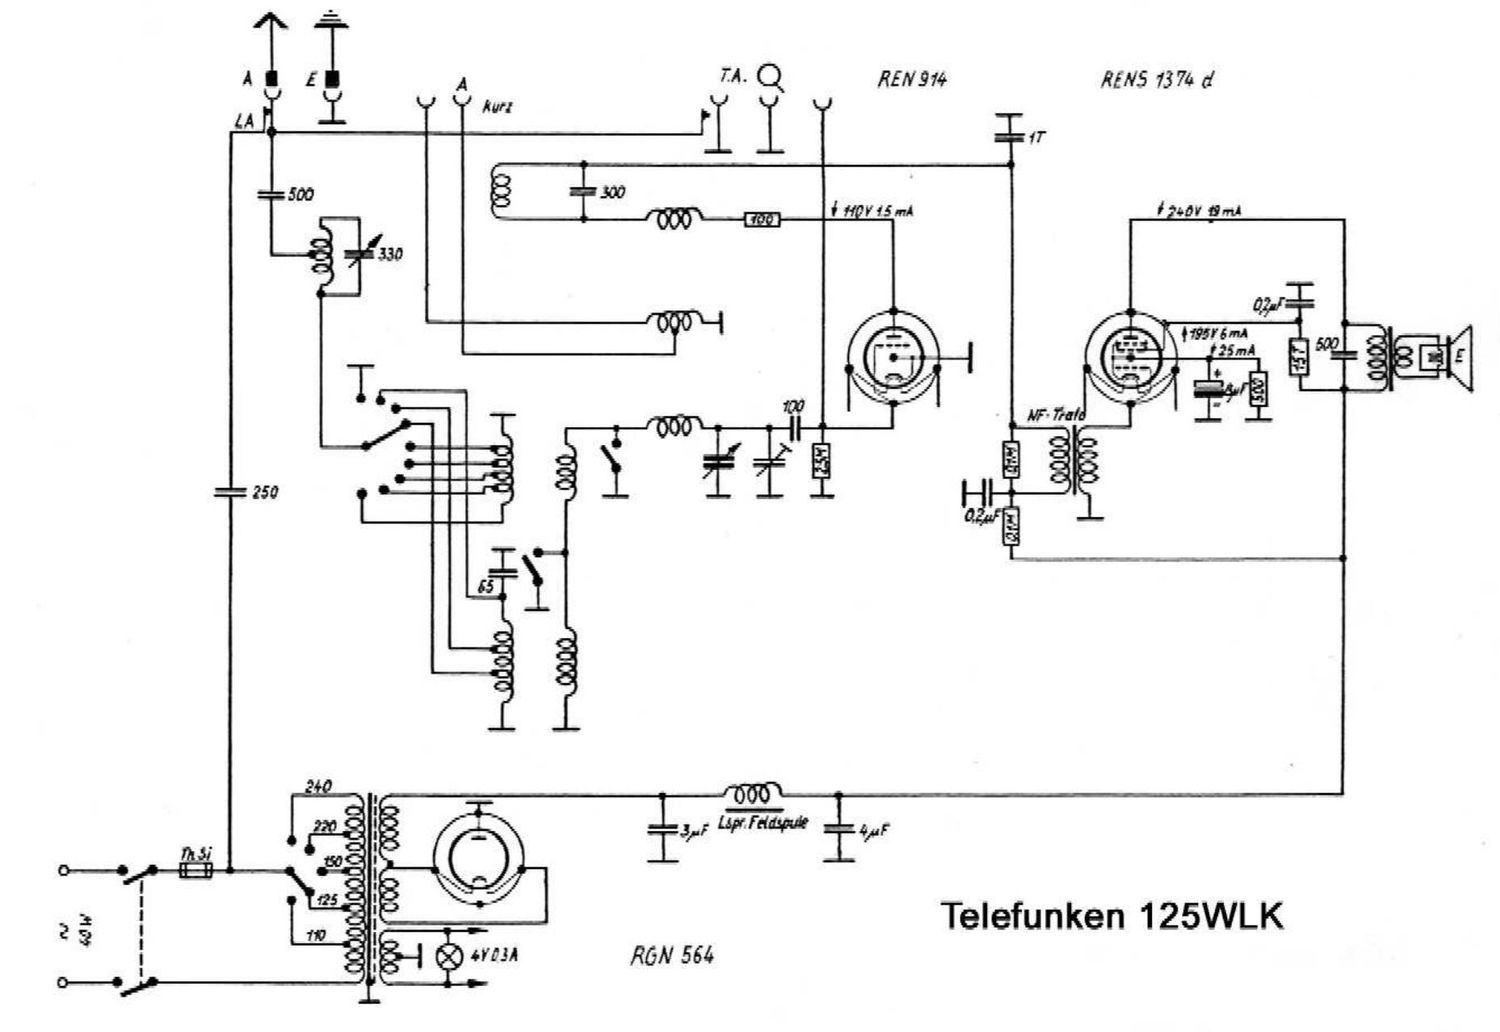 Telefunken 125 WLK Schematic